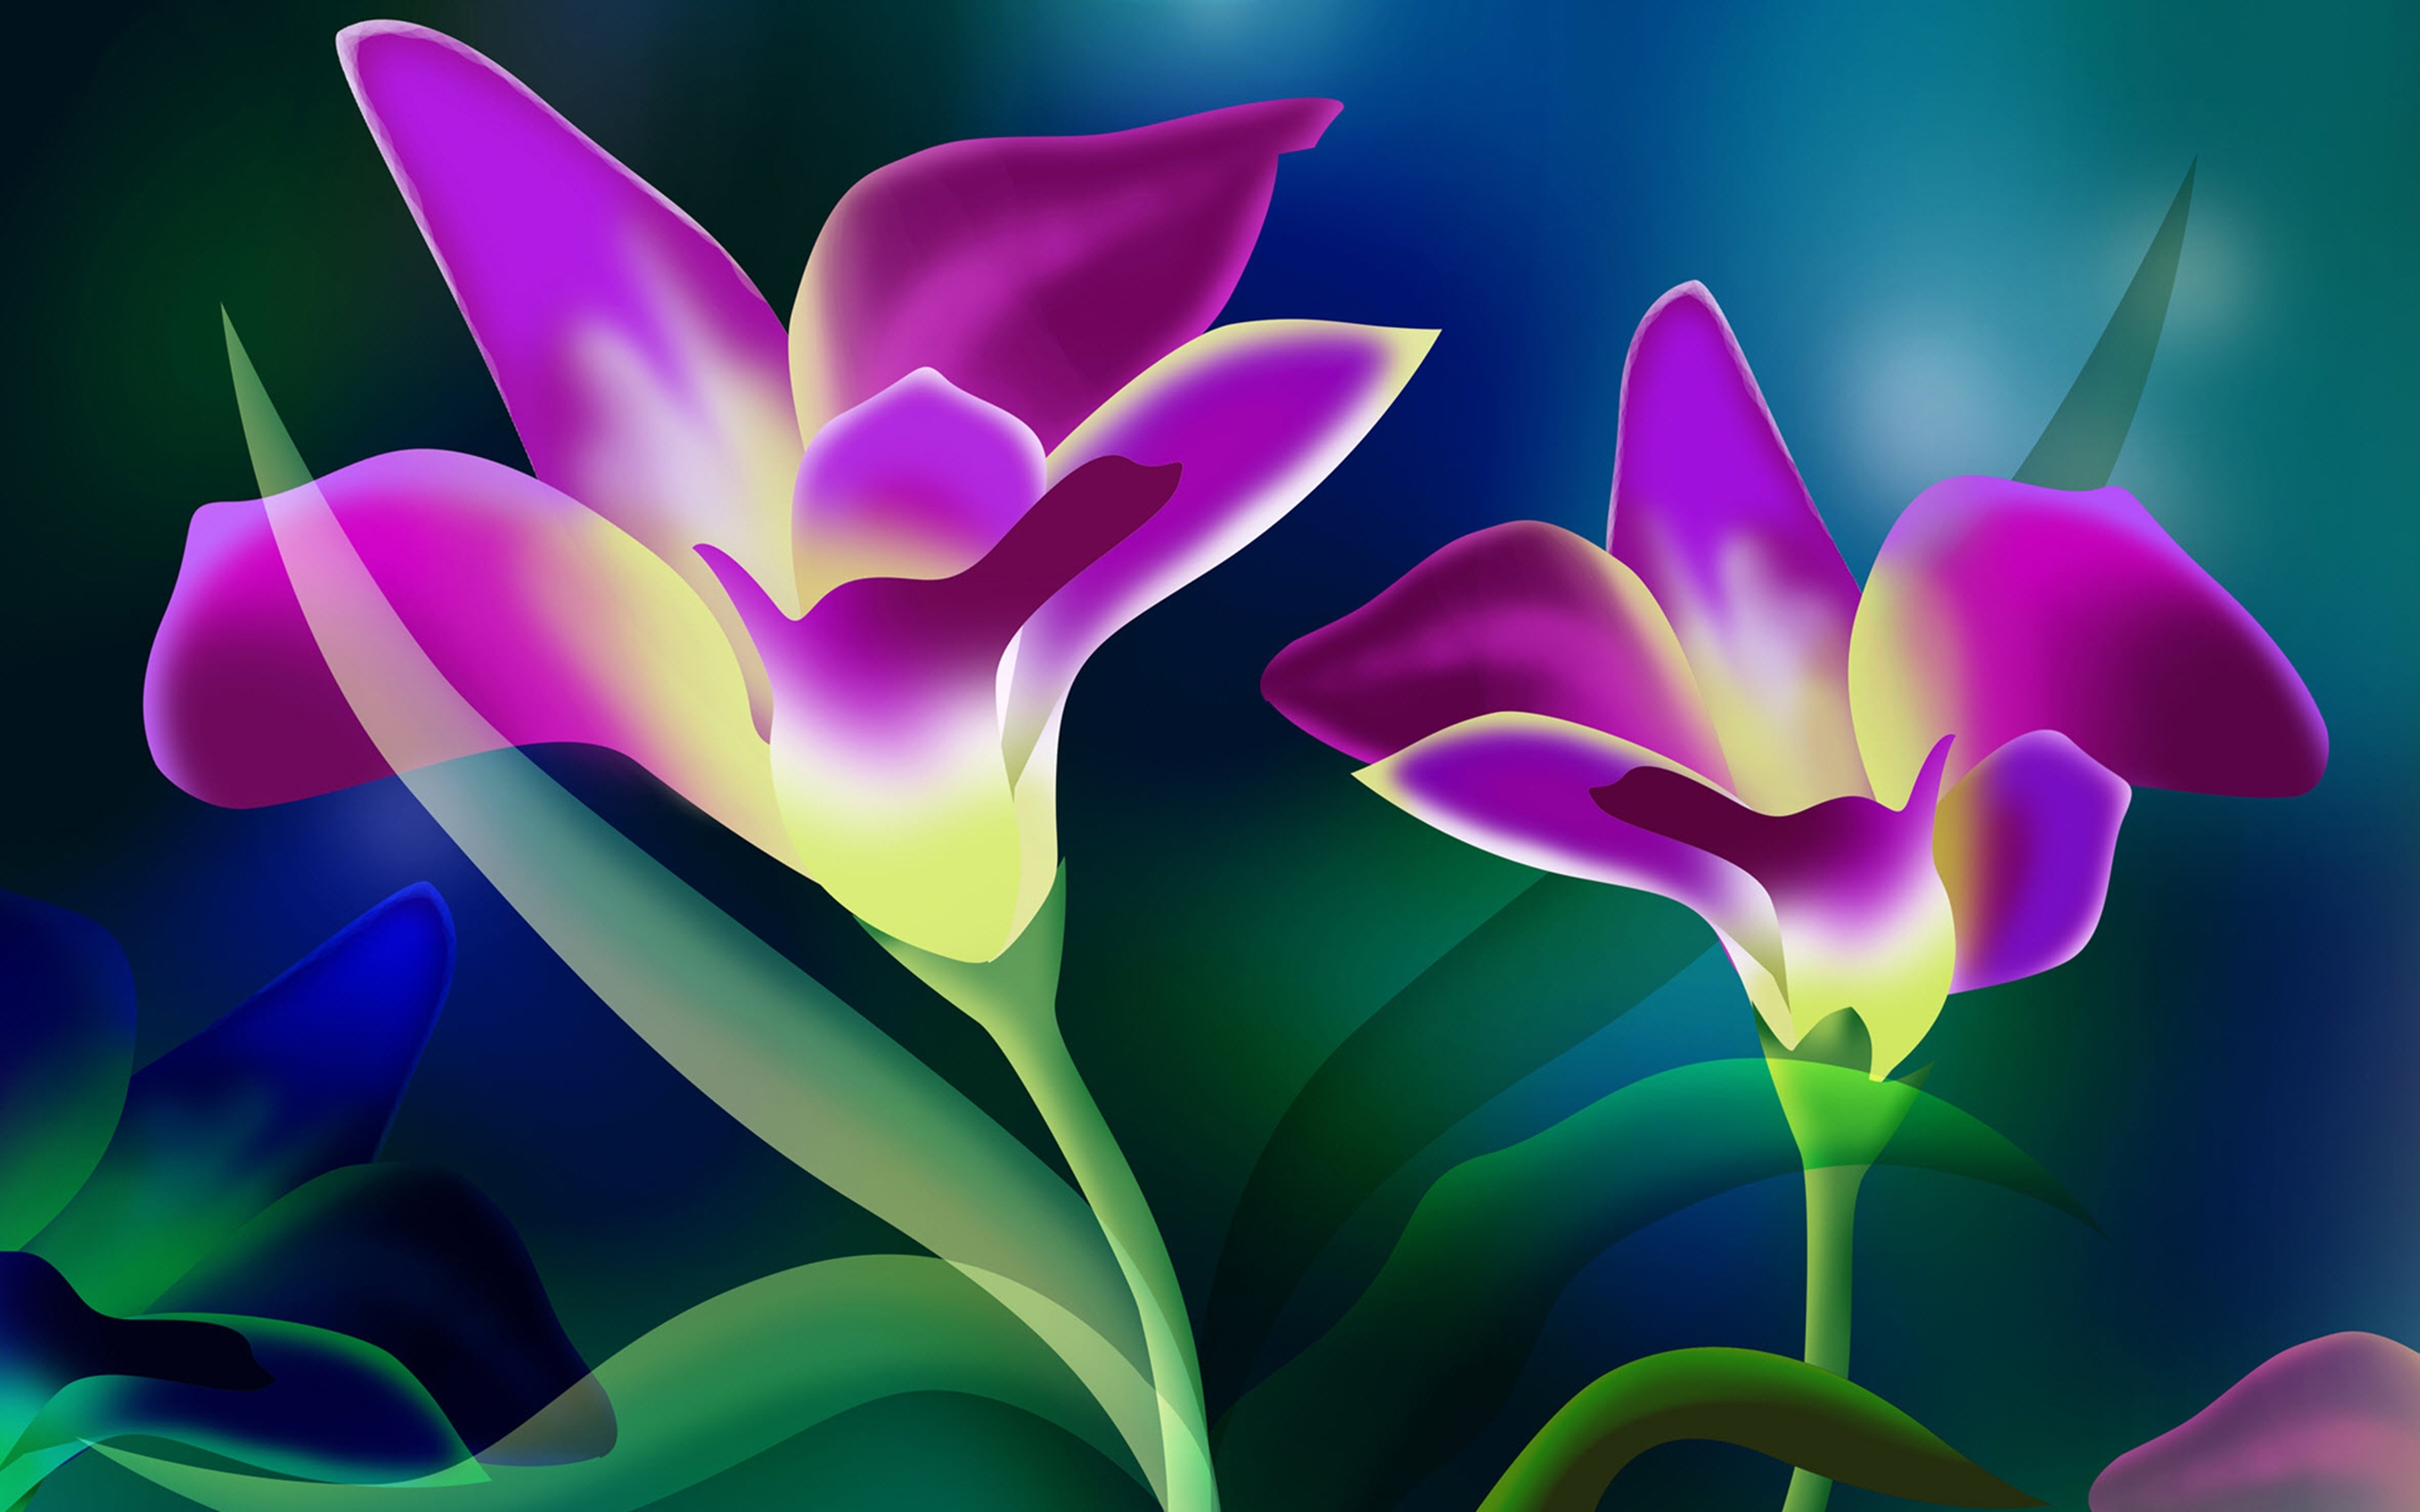 Descarga gratuita de fondo de pantalla para móvil de Flores, Flor, Artístico, Flor Purpura.